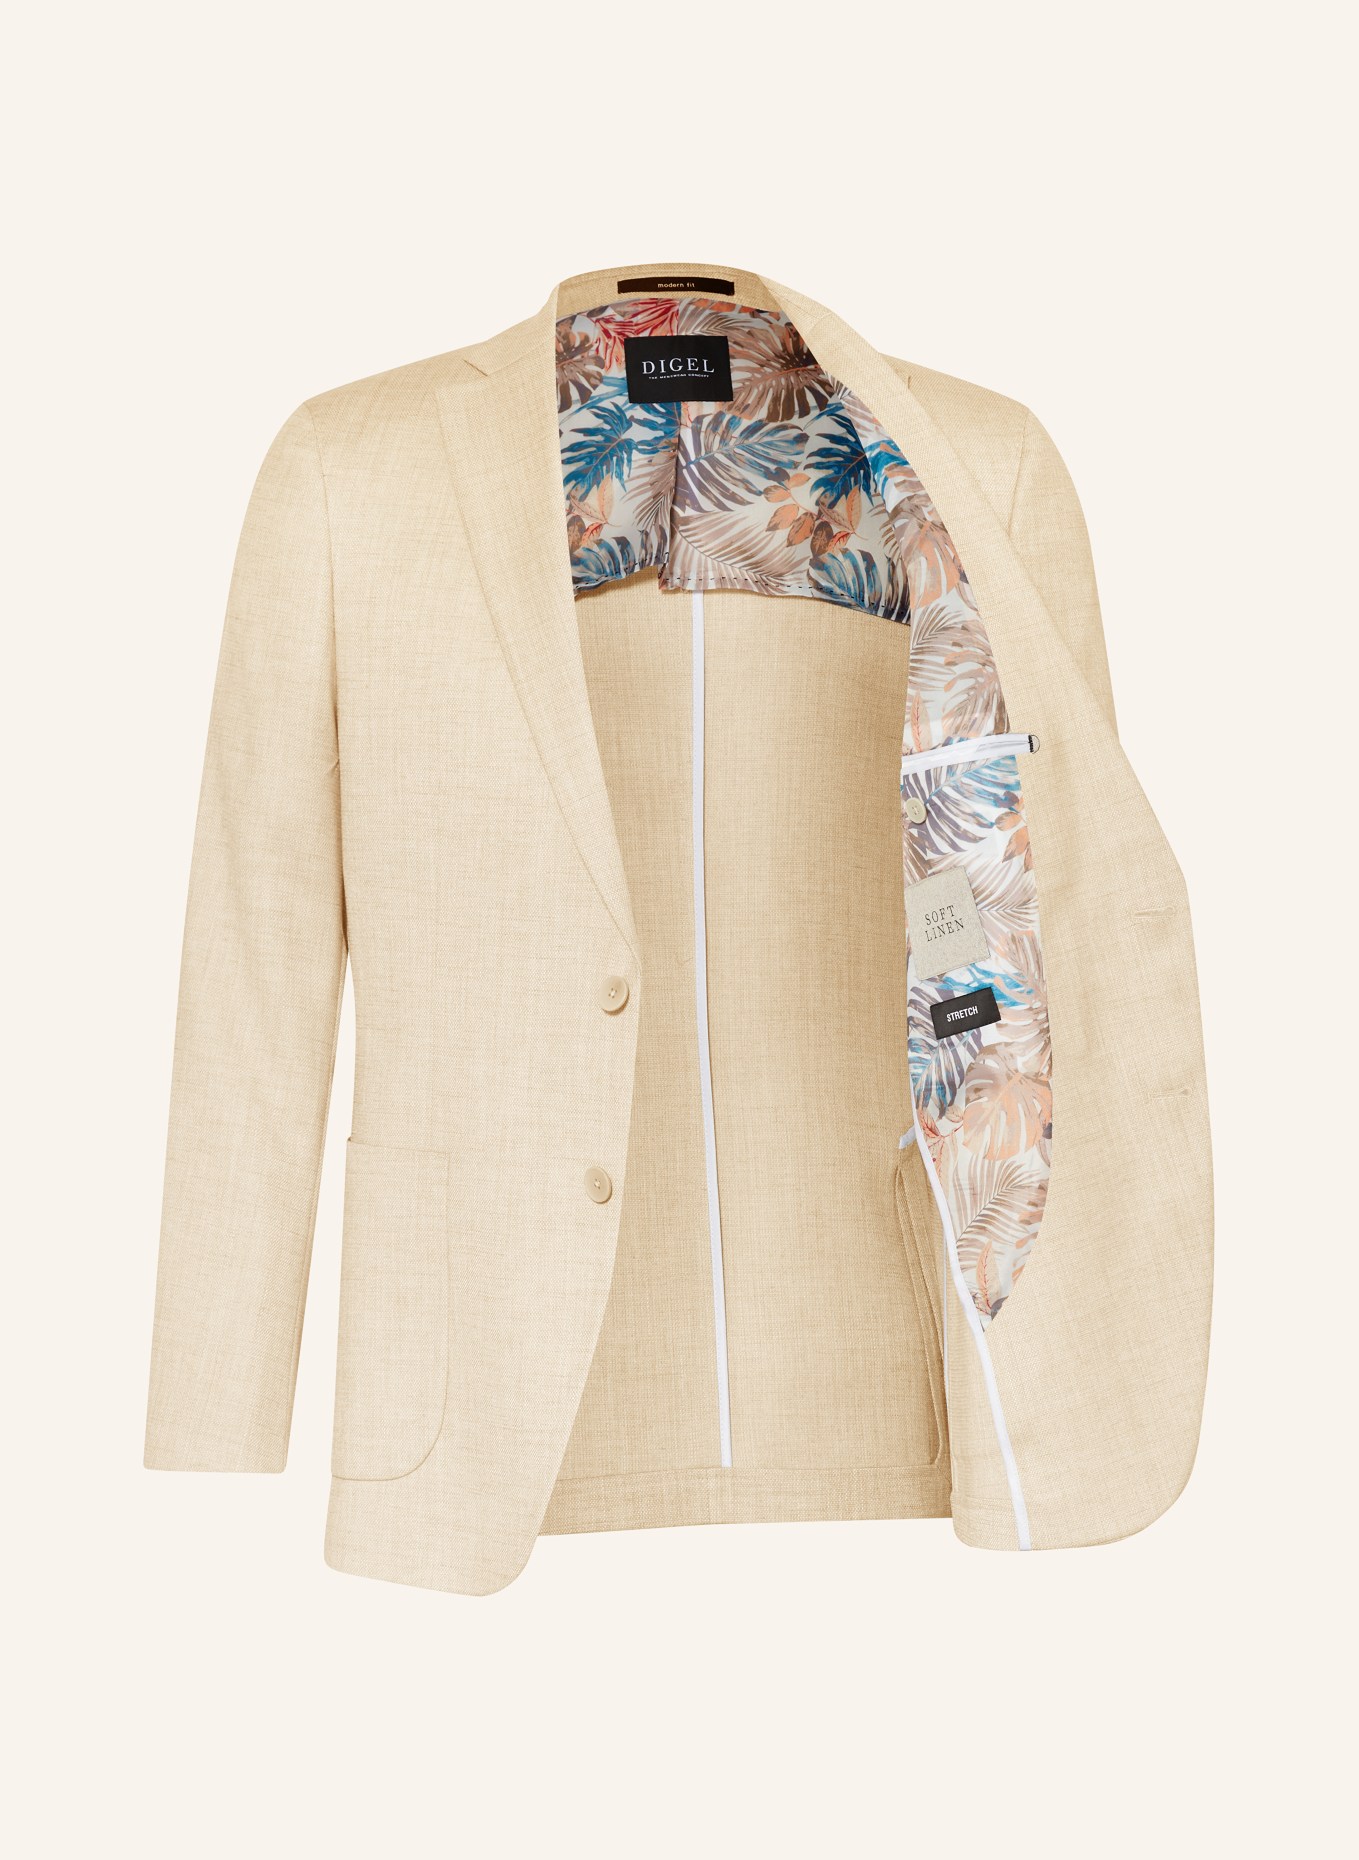 DIGEL Suit jacket EDWARD modern fit, Color: 76 BEIGE (Image 5)